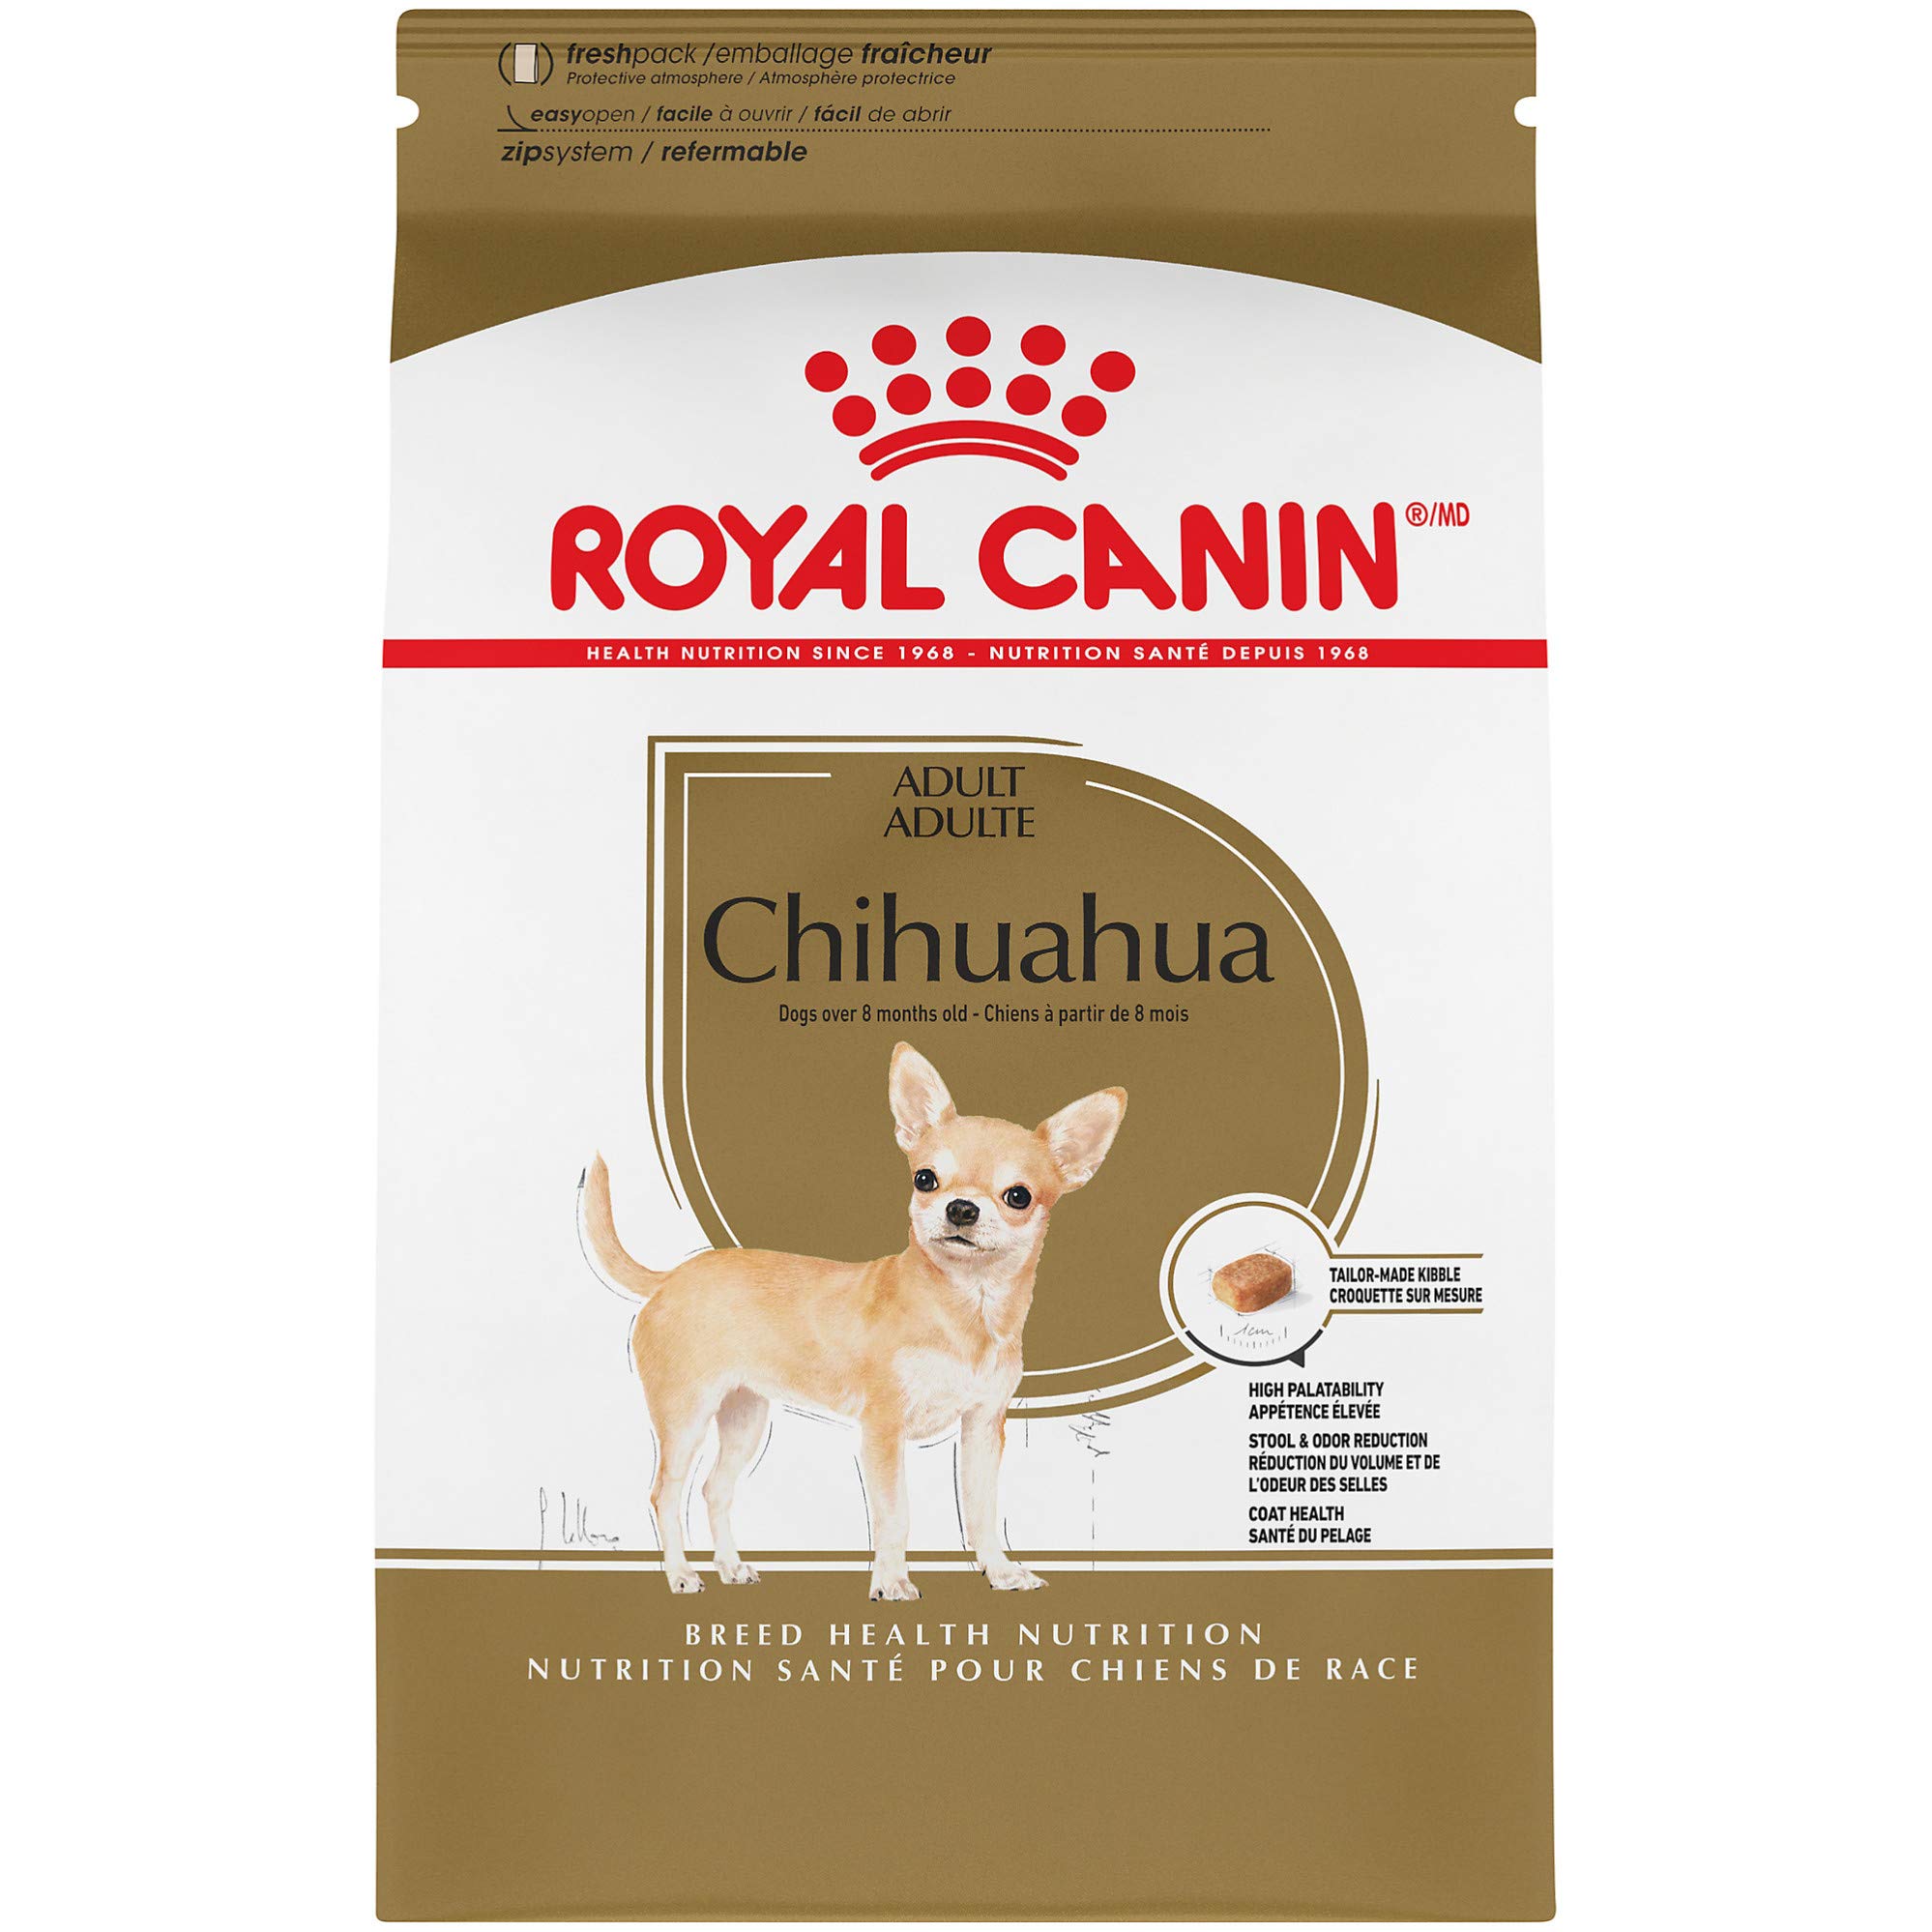 Royal Canin नस्ल स्वास्थ्य पोषण चिहुआहुआ वयस्क सूखा कुत्ता खाना